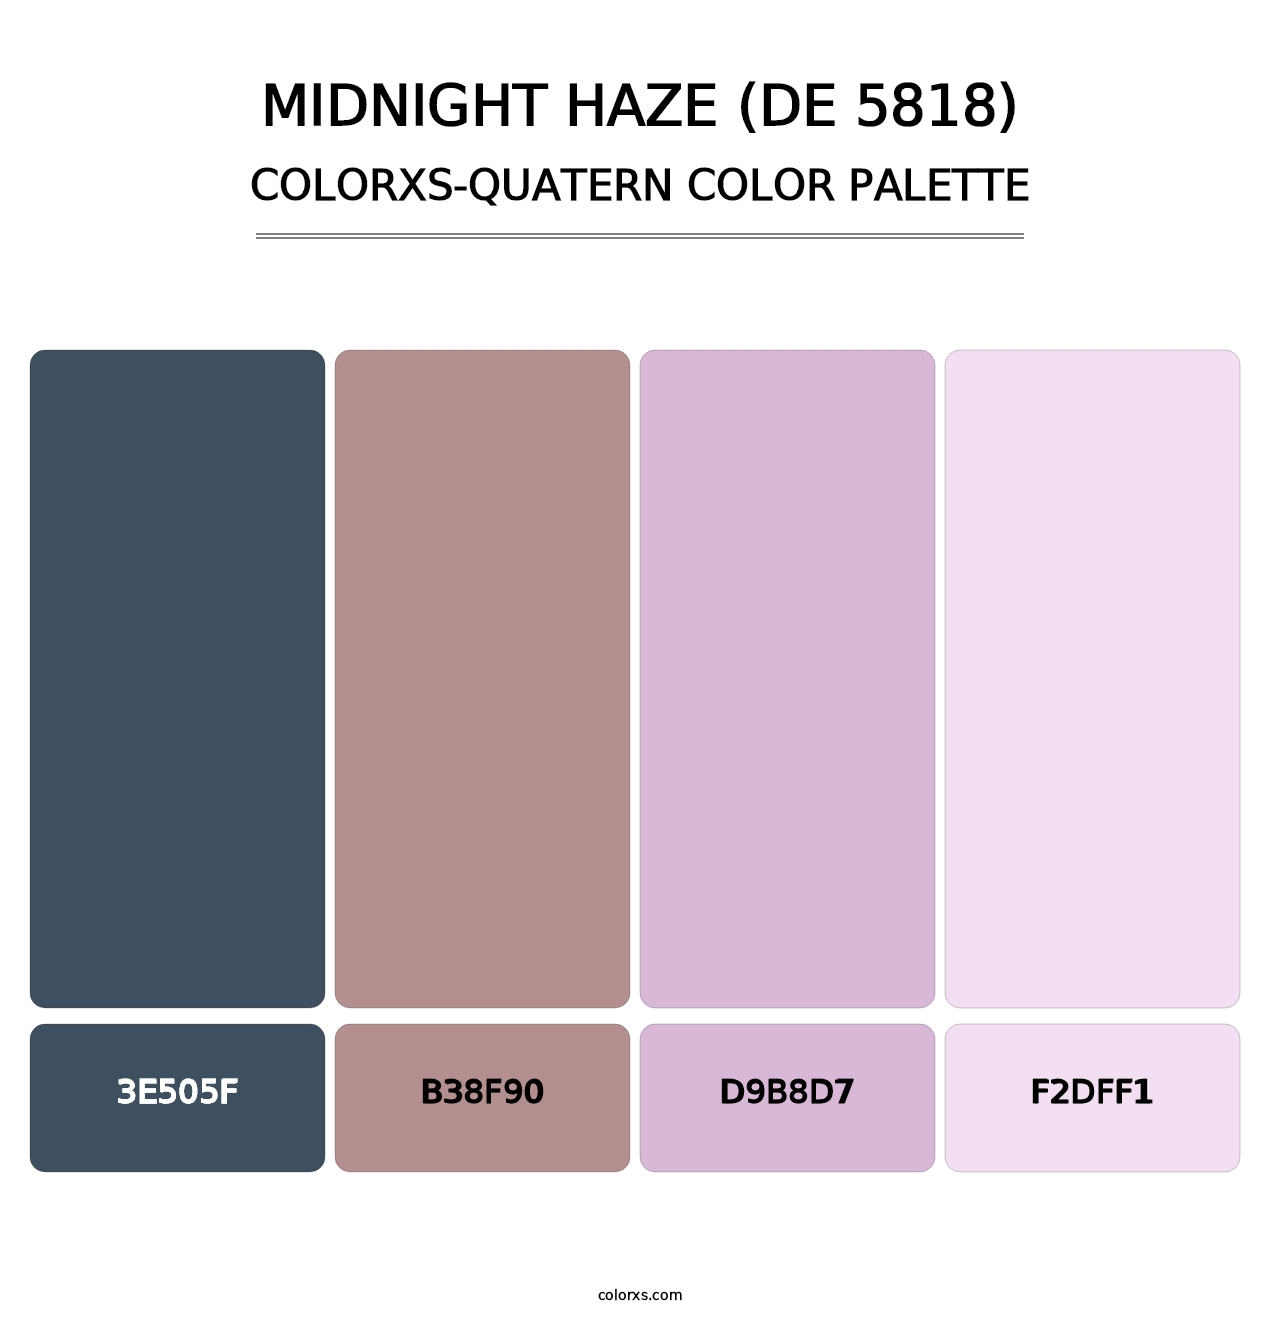 Midnight Haze (DE 5818) - Colorxs Quatern Palette